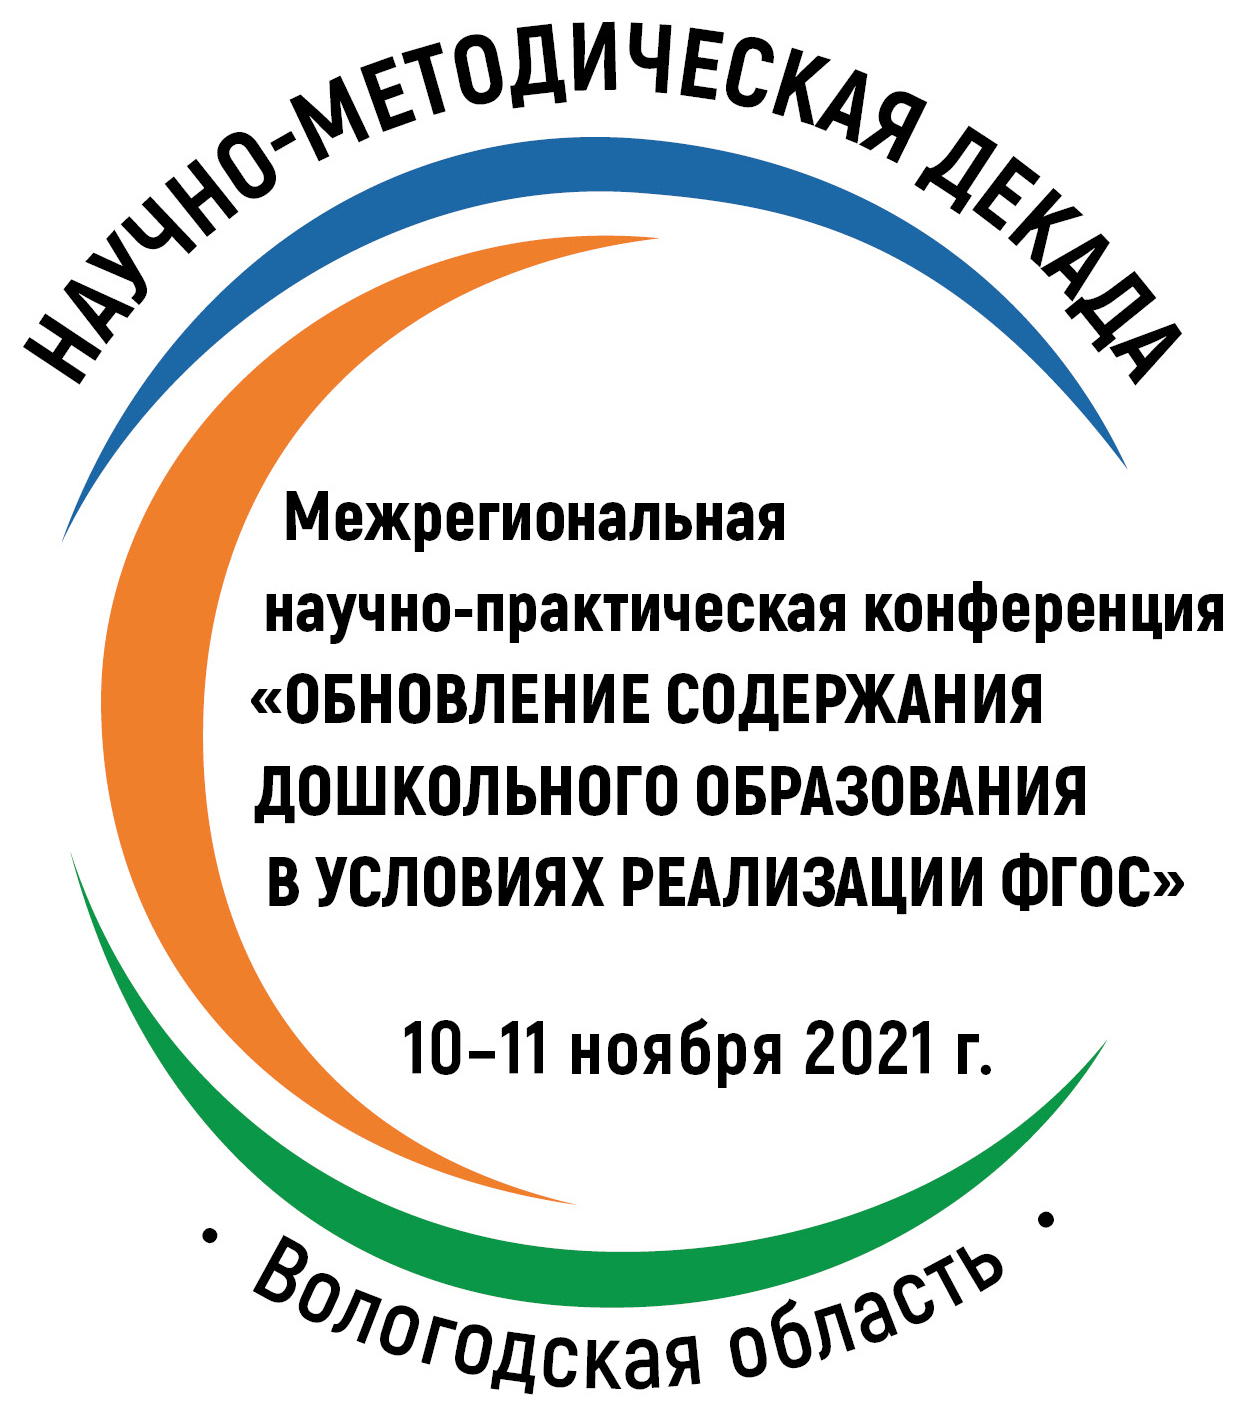 Межрегиональная научно-практическая конференция «Обновление содержания дошкольного образования в условиях реализации ФГОС» 10-11 ноября 2021 года